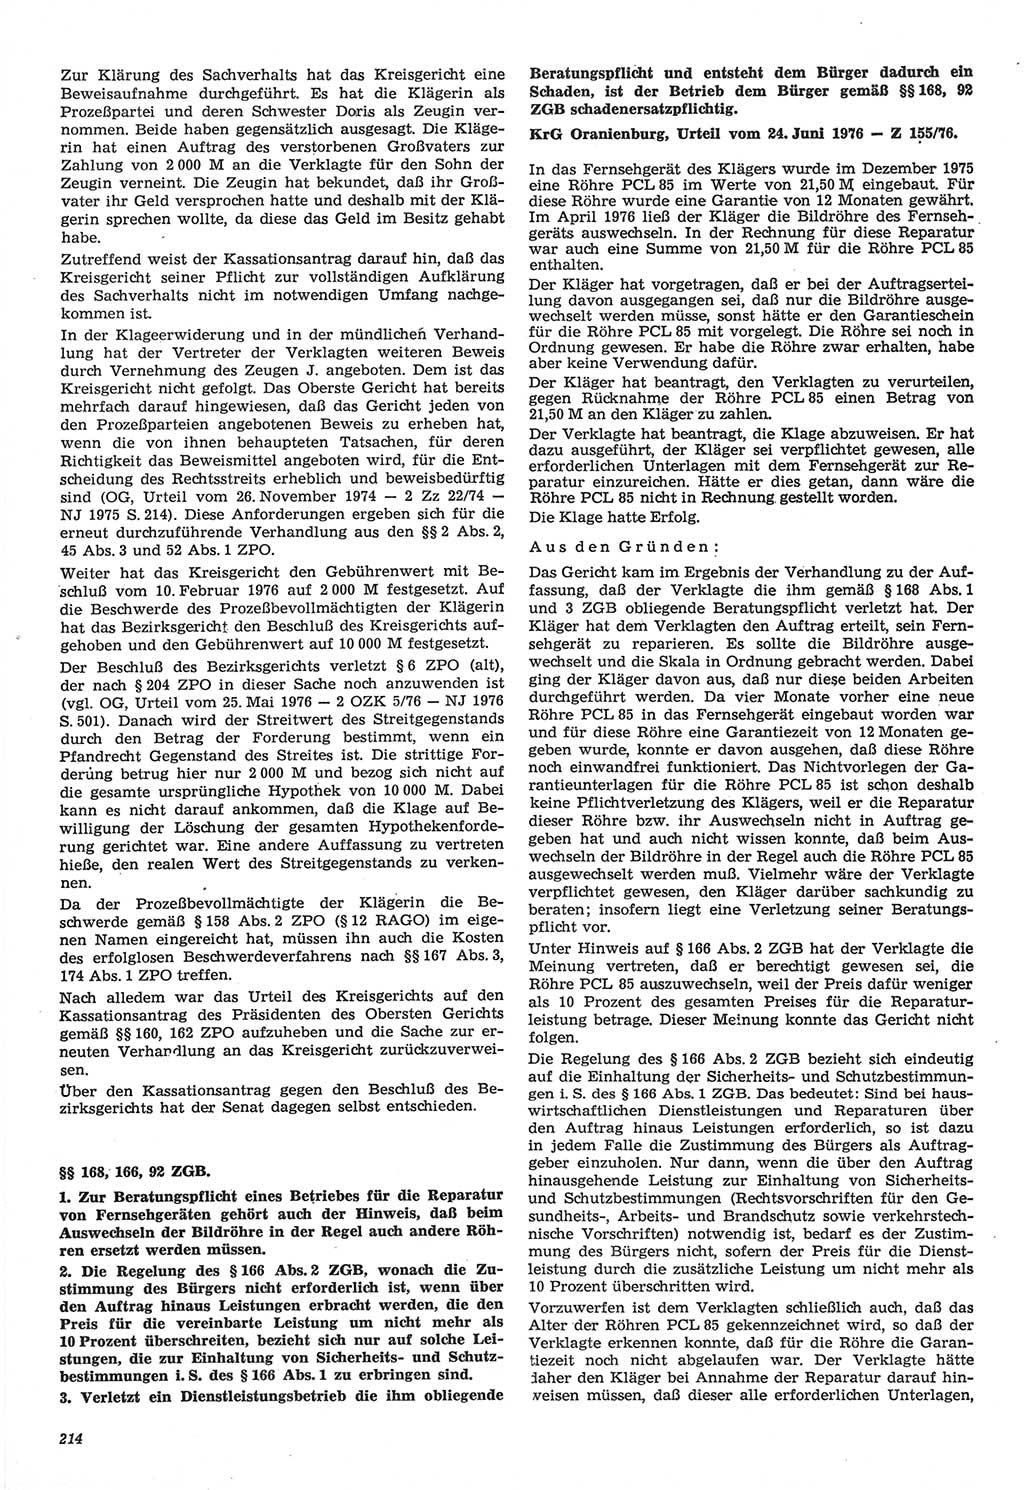 Neue Justiz (NJ), Zeitschrift für Recht und Rechtswissenschaft-Zeitschrift, sozialistisches Recht und Gesetzlichkeit, 31. Jahrgang 1977, Seite 214 (NJ DDR 1977, S. 214)